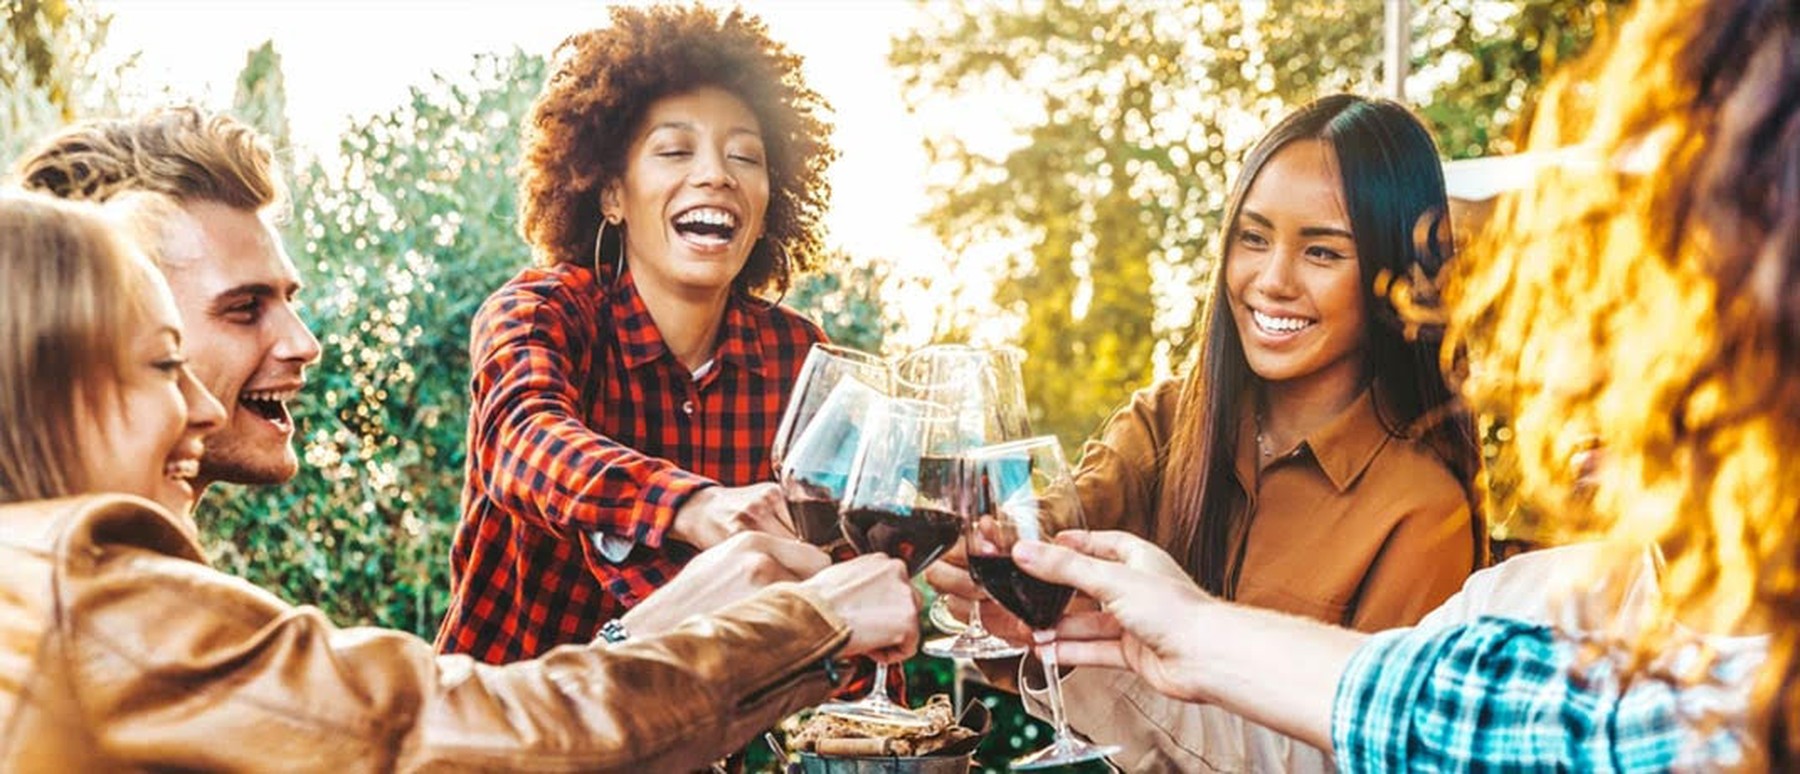 Groep vrienden proosten met wijn